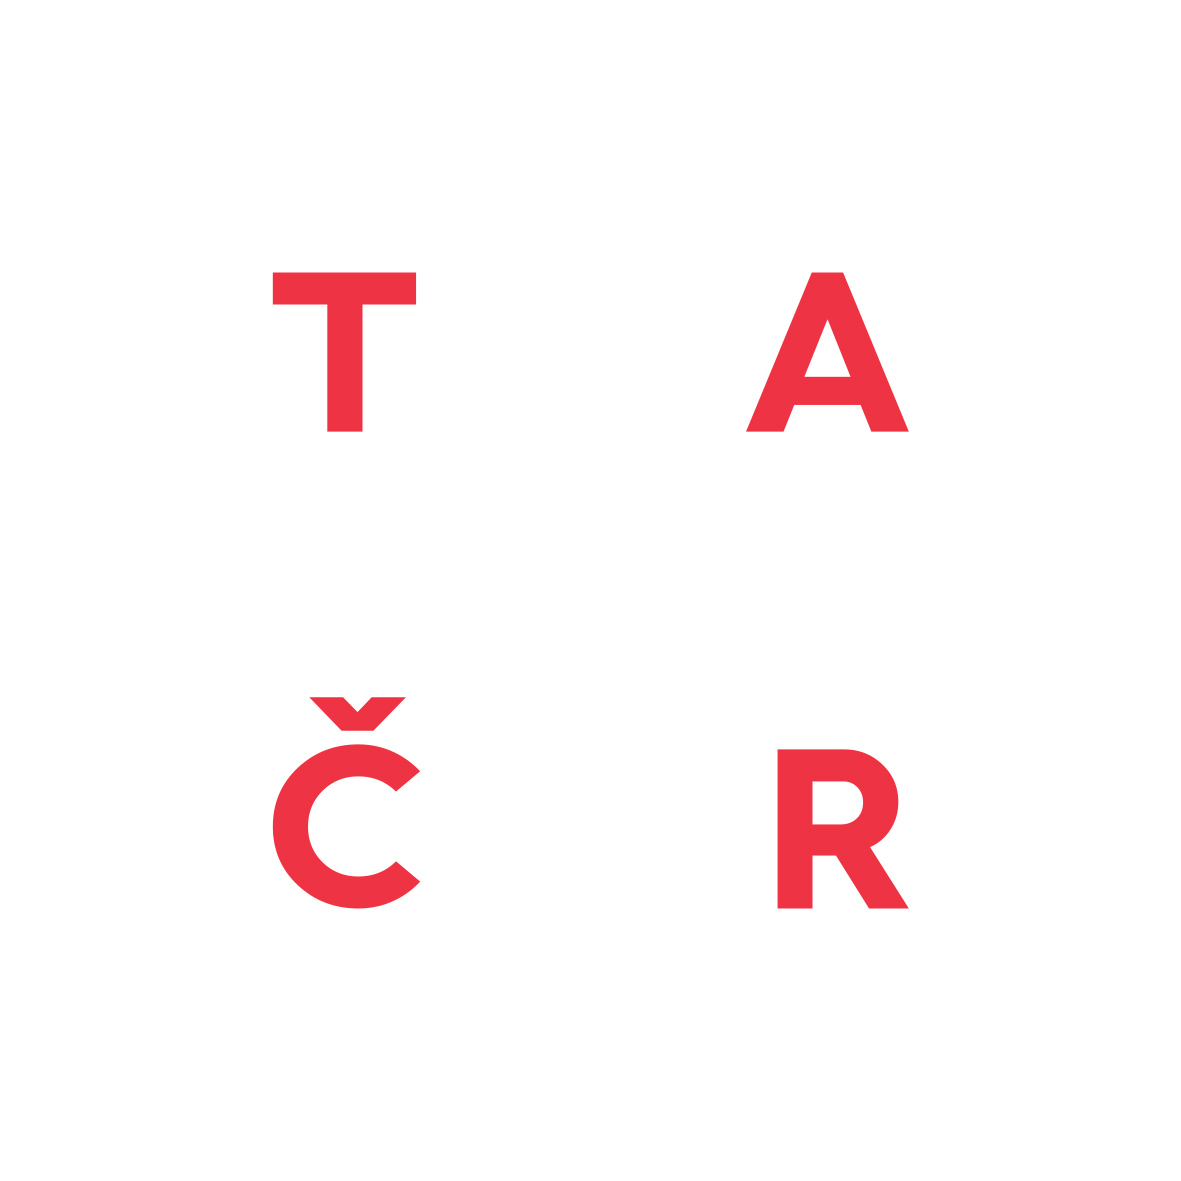 TACR_logo_white_red.jpg